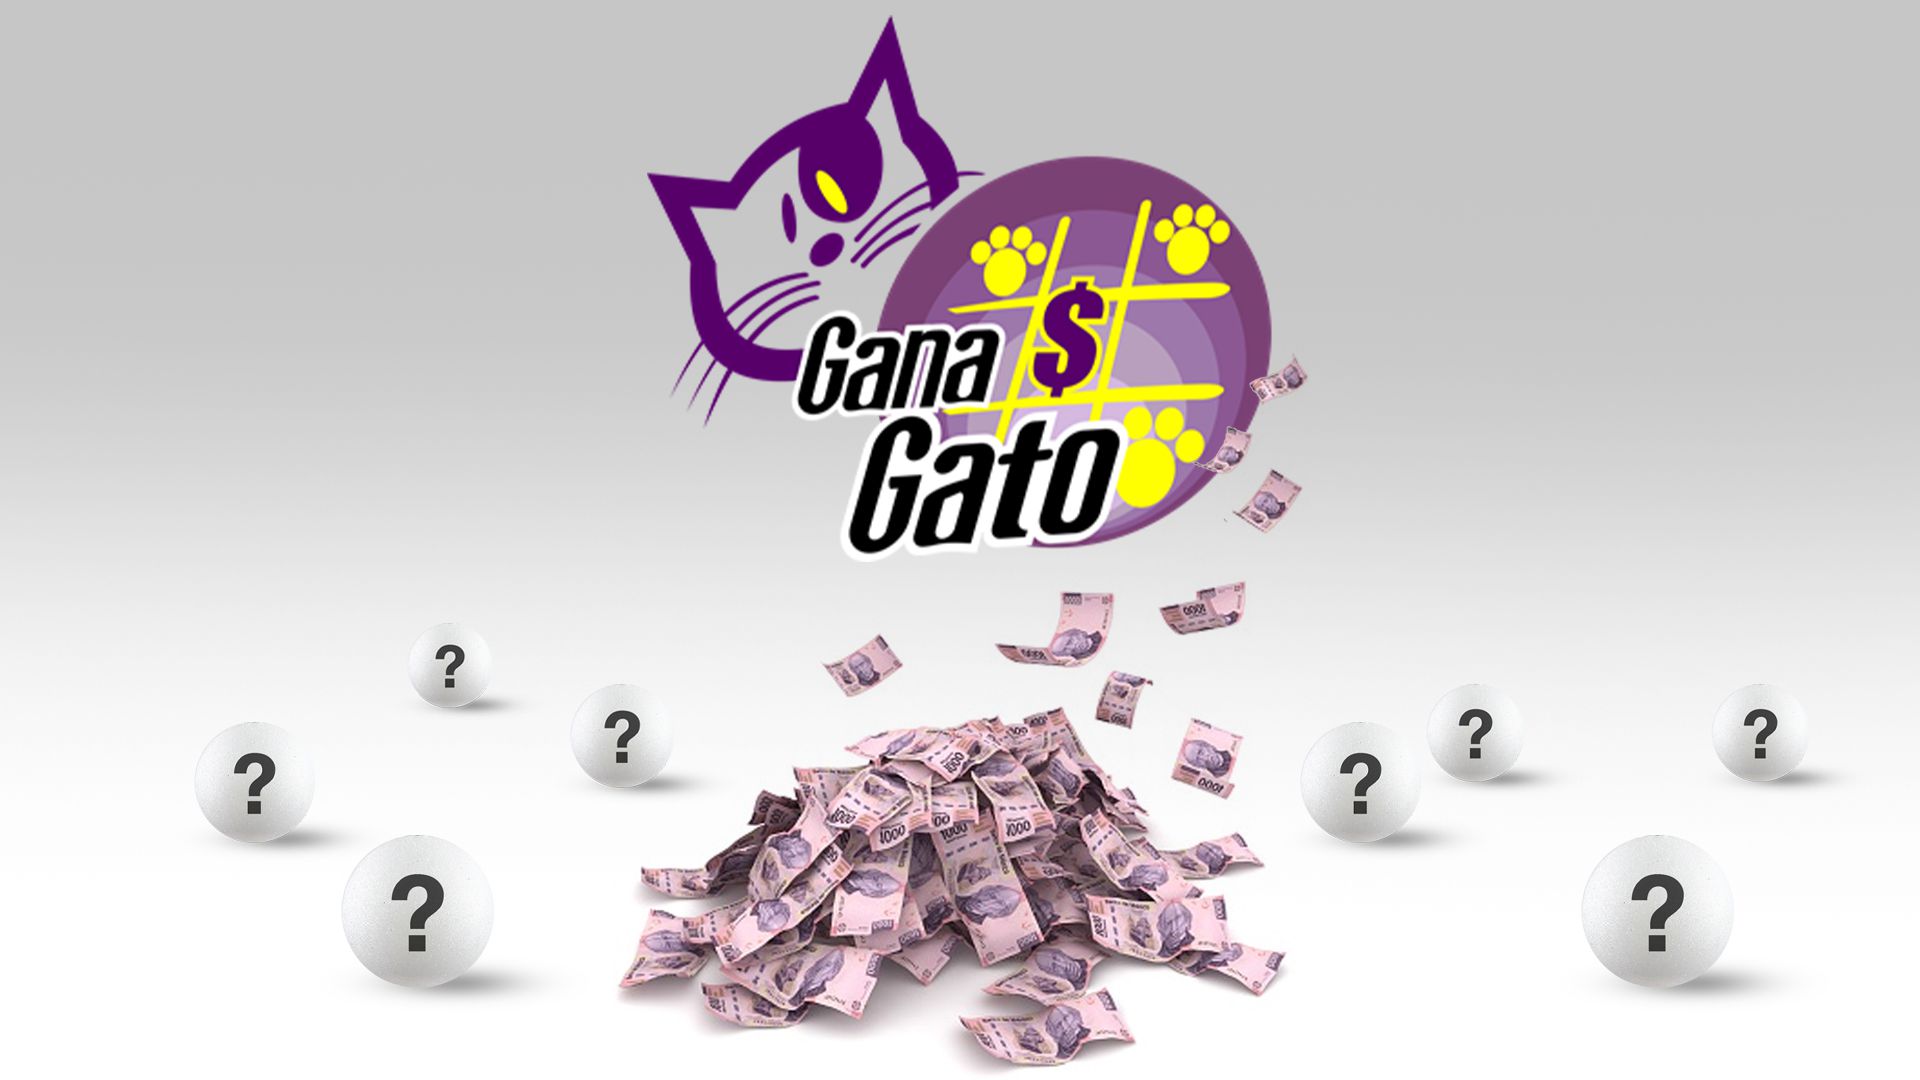 Con 10 pesos puedes ganar cientos de miles de pesos en Gana Gato (Infobae/Jovani Pérez)